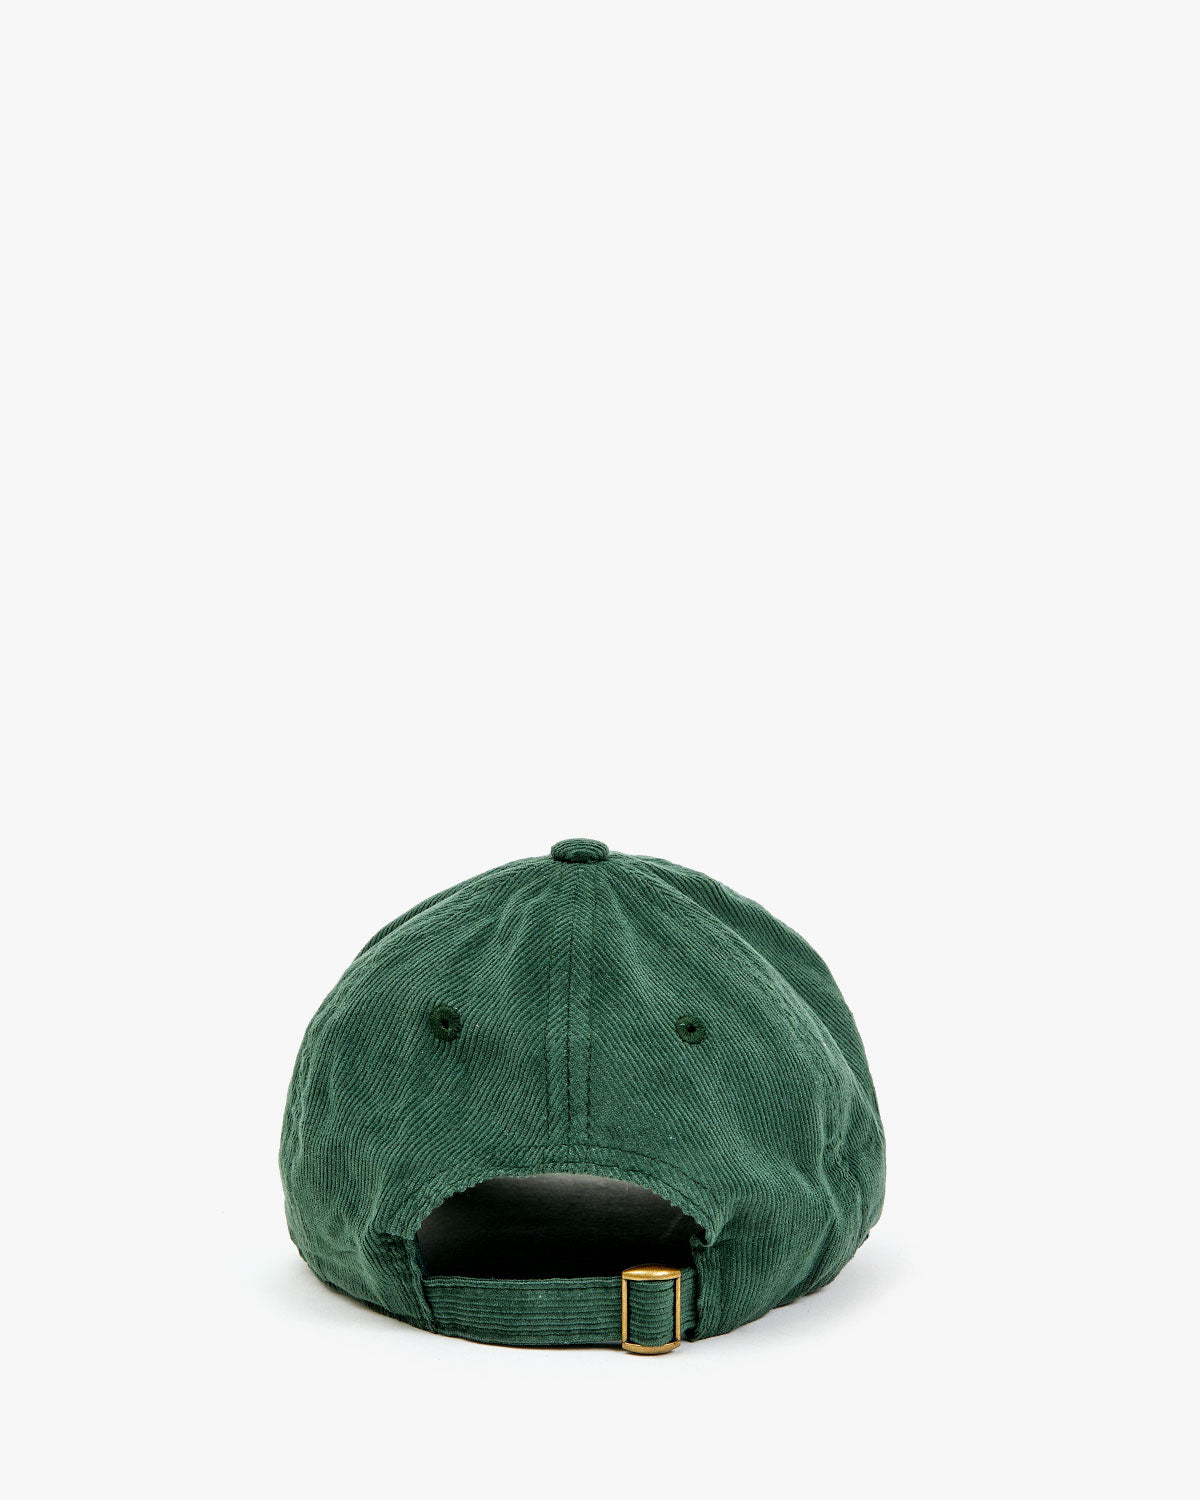 back image of the Olive Corduroy Oui Baseball Hat